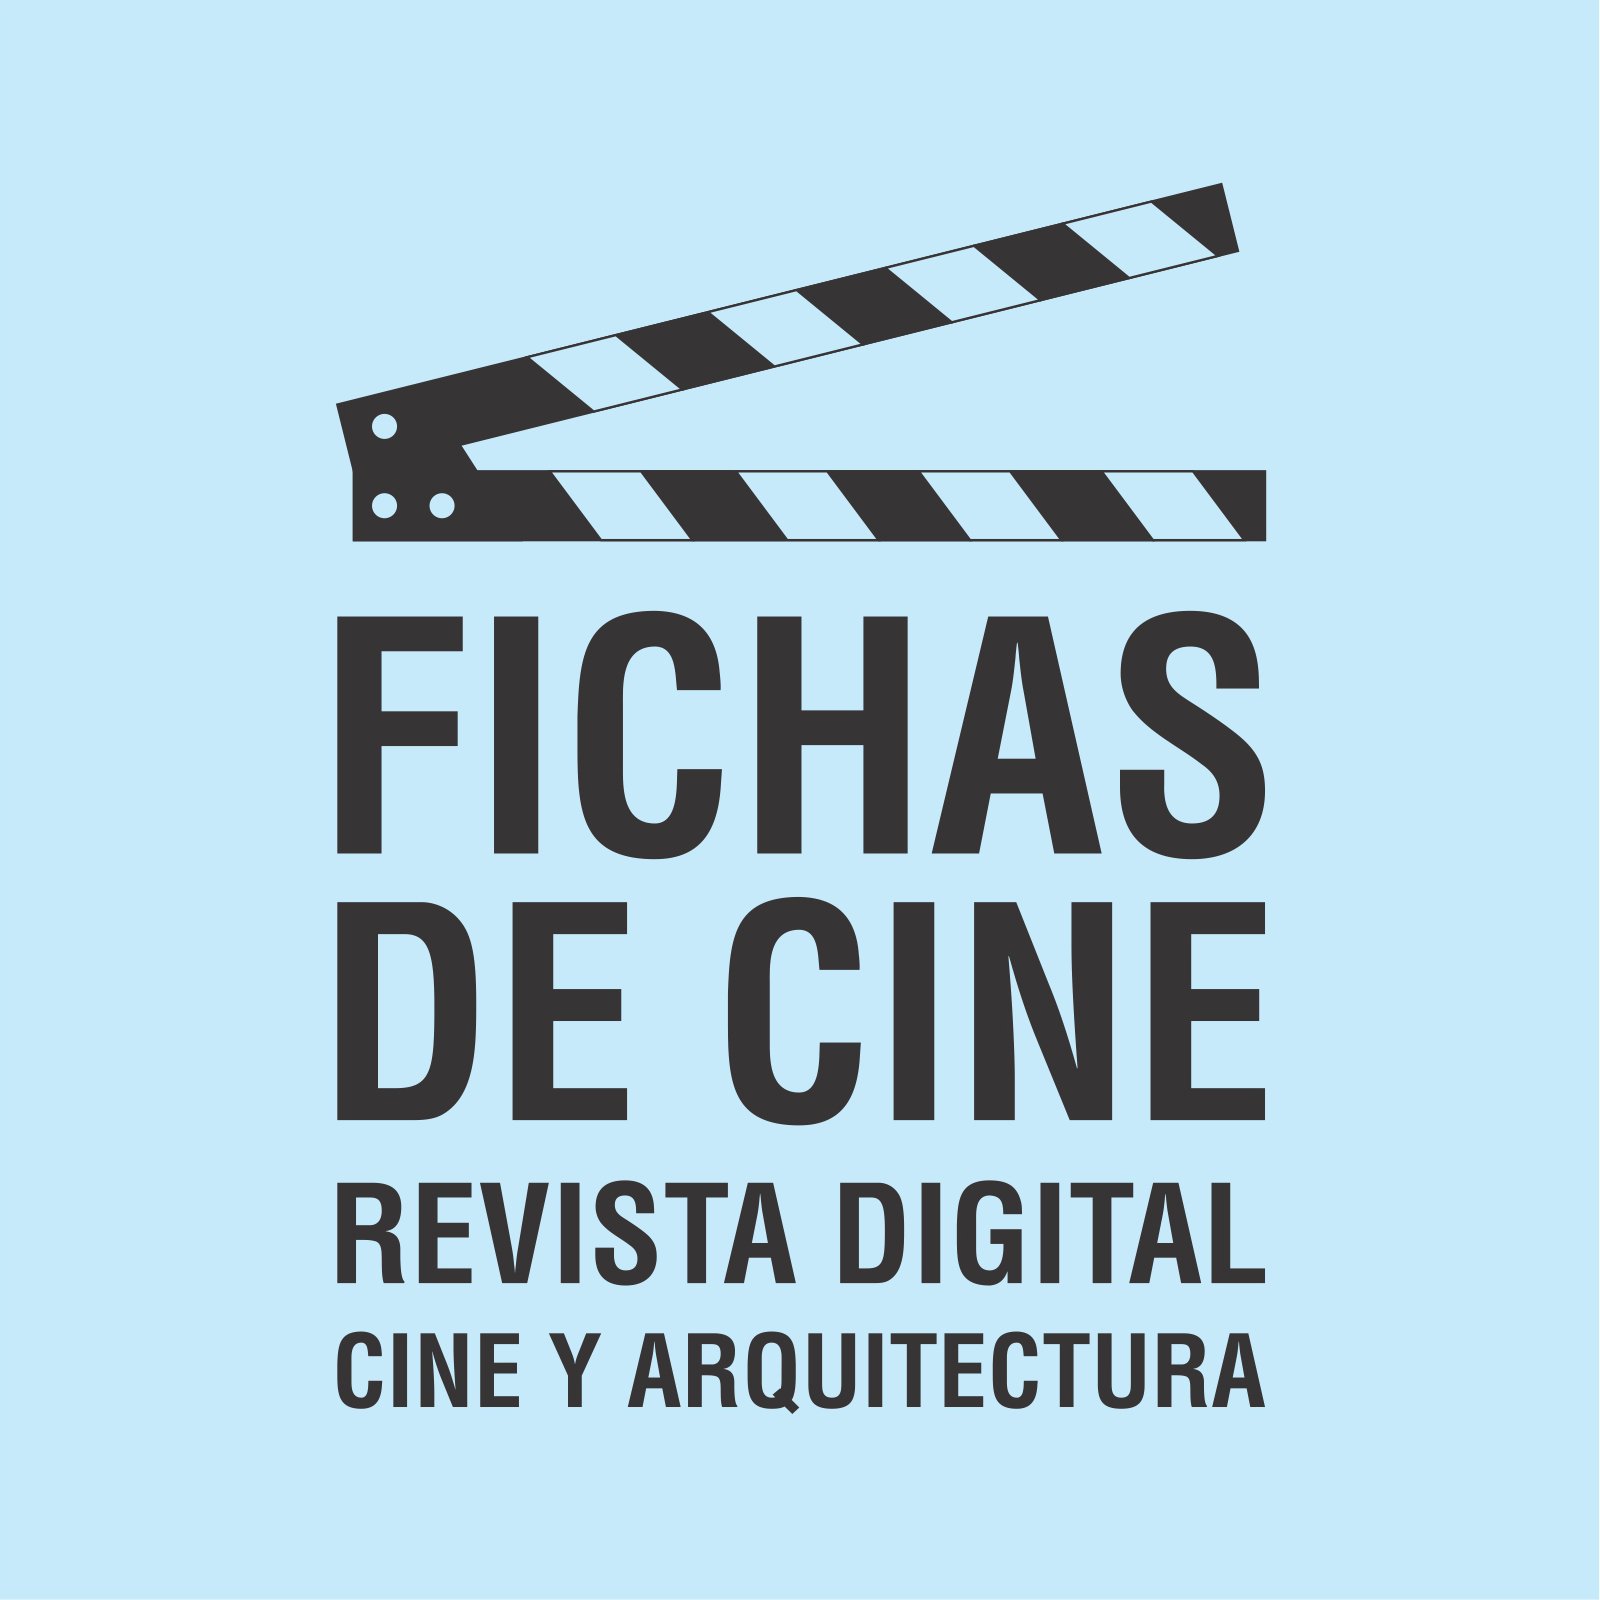 Fichas de Cine es una publicación digital gratuita en la que se analiza el mundo del cine desde el punto de vista de la arquitectura.